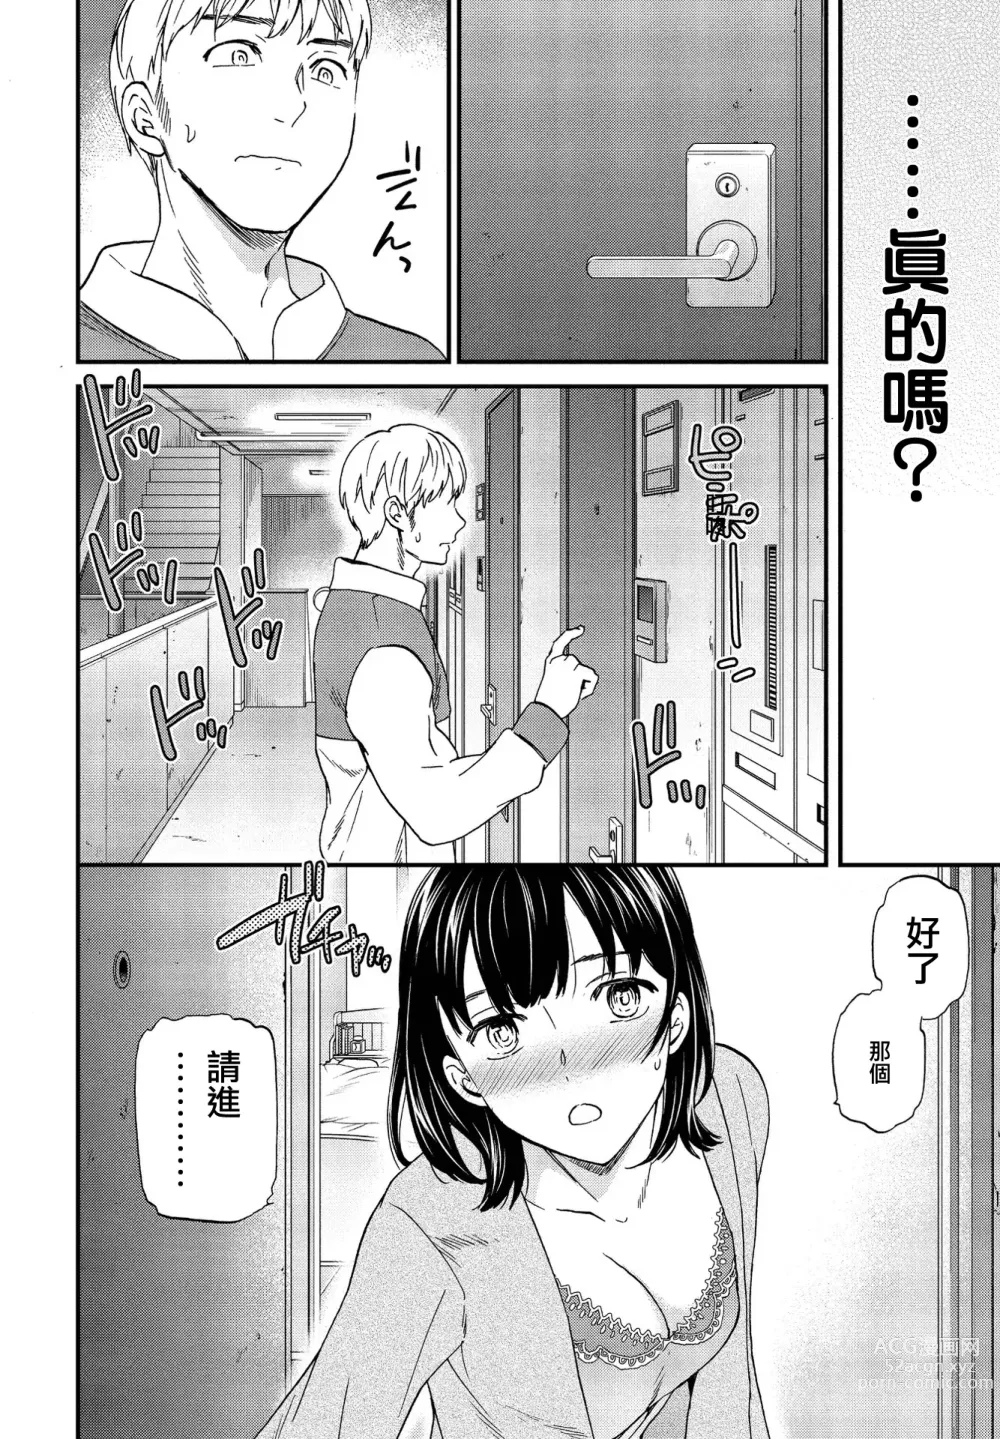 Page 14 of manga Utsubokazura Zenpen